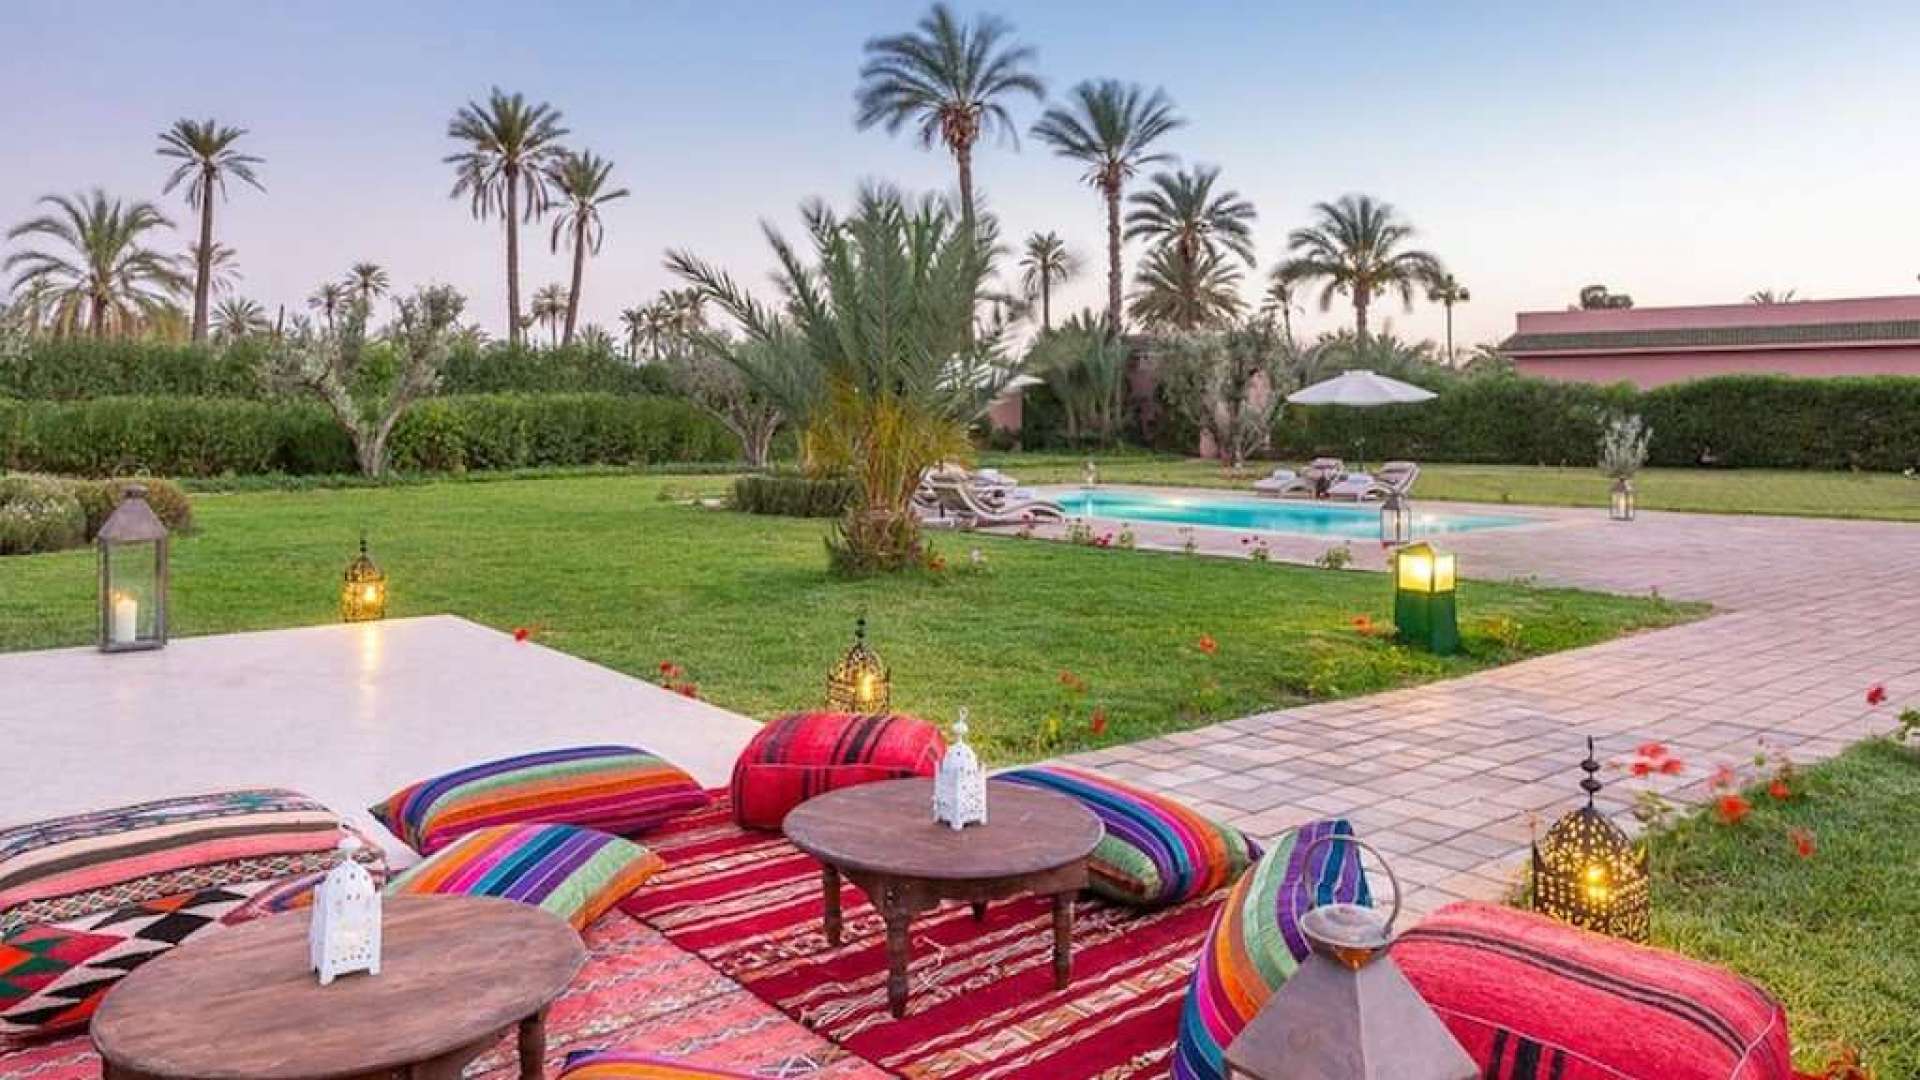 Location de vacances,Villa,Villa de Prestige 7ch dans un domaine privé à la Palmeraie,Marrakech,Palmeraie